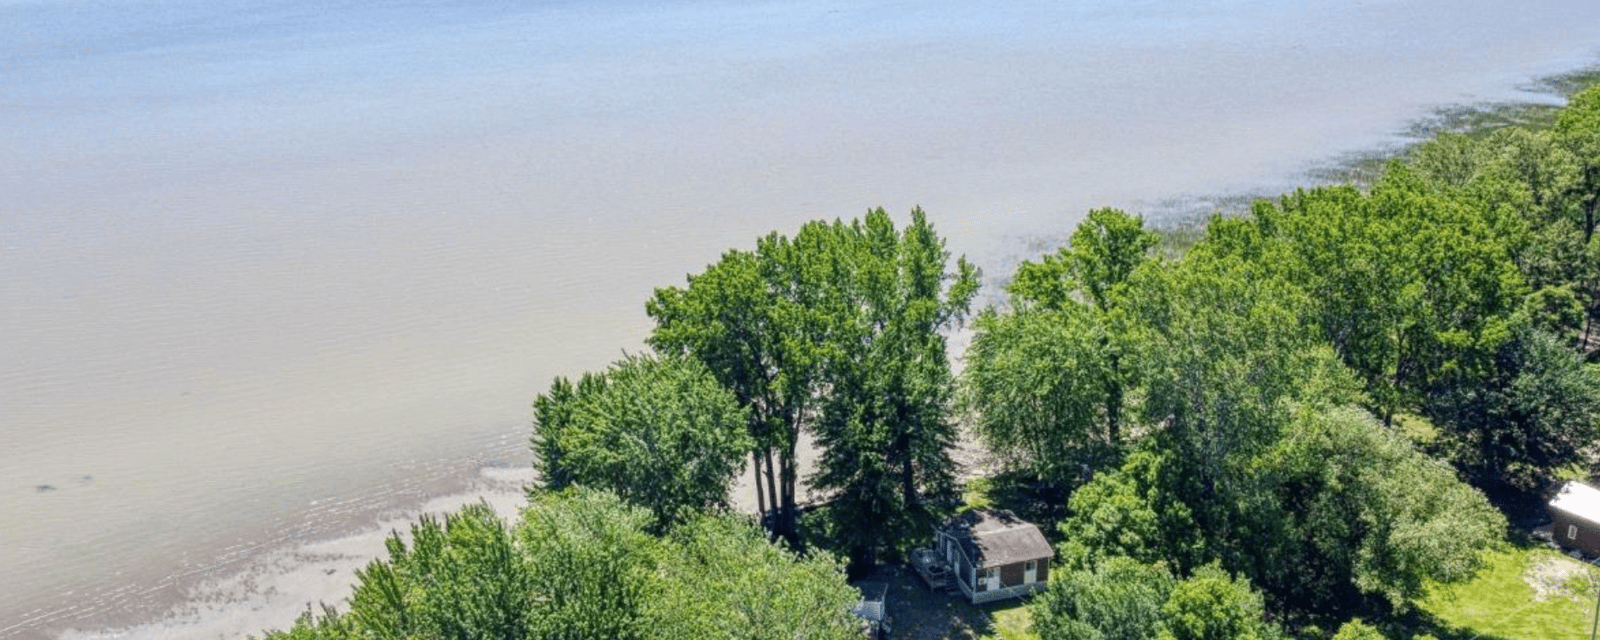 Ce chalet 3 saisons offre une magnifique vue sur le lac Saint-Pierre